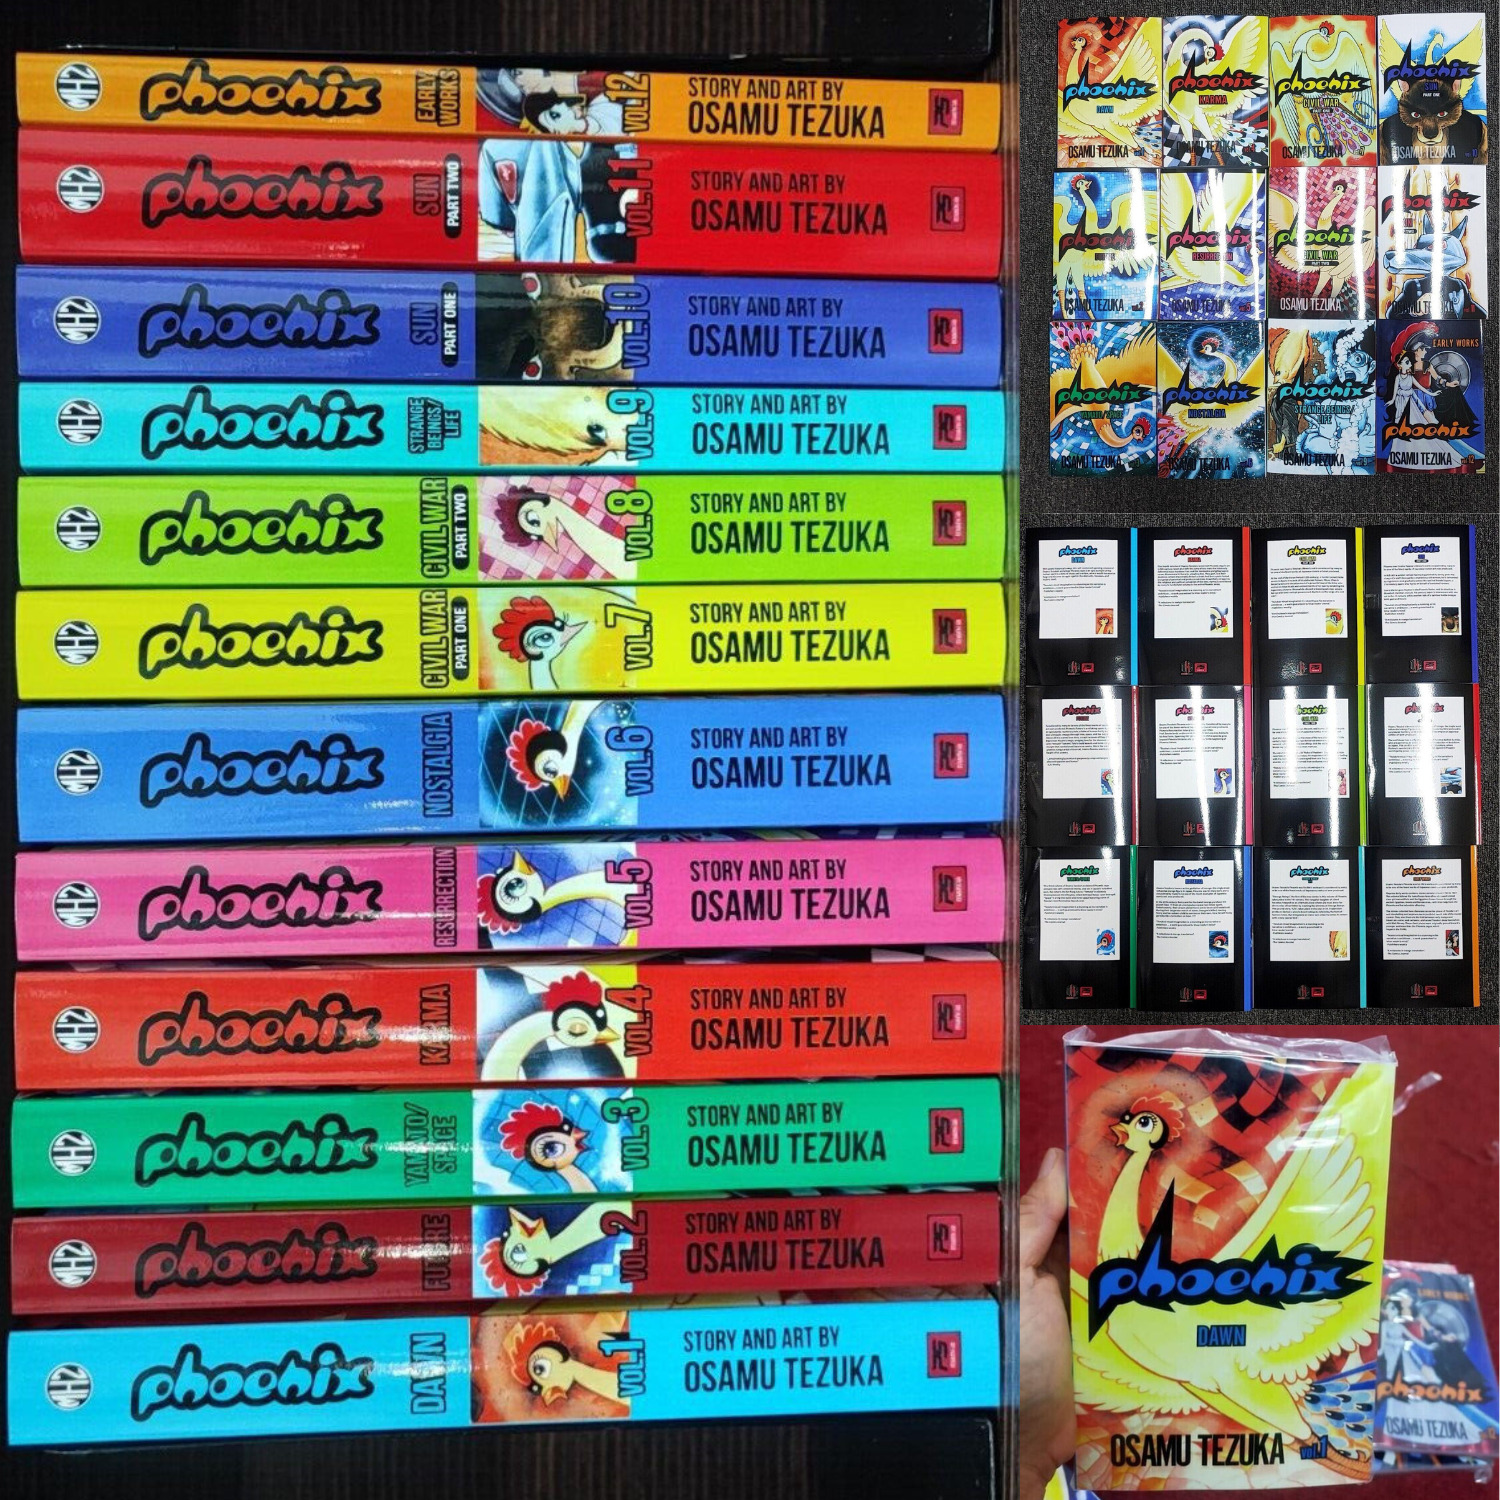 Phoenix Manga NEW Full Set Volume 1-12 (END) By Osamu Tezuka English Version-DHL